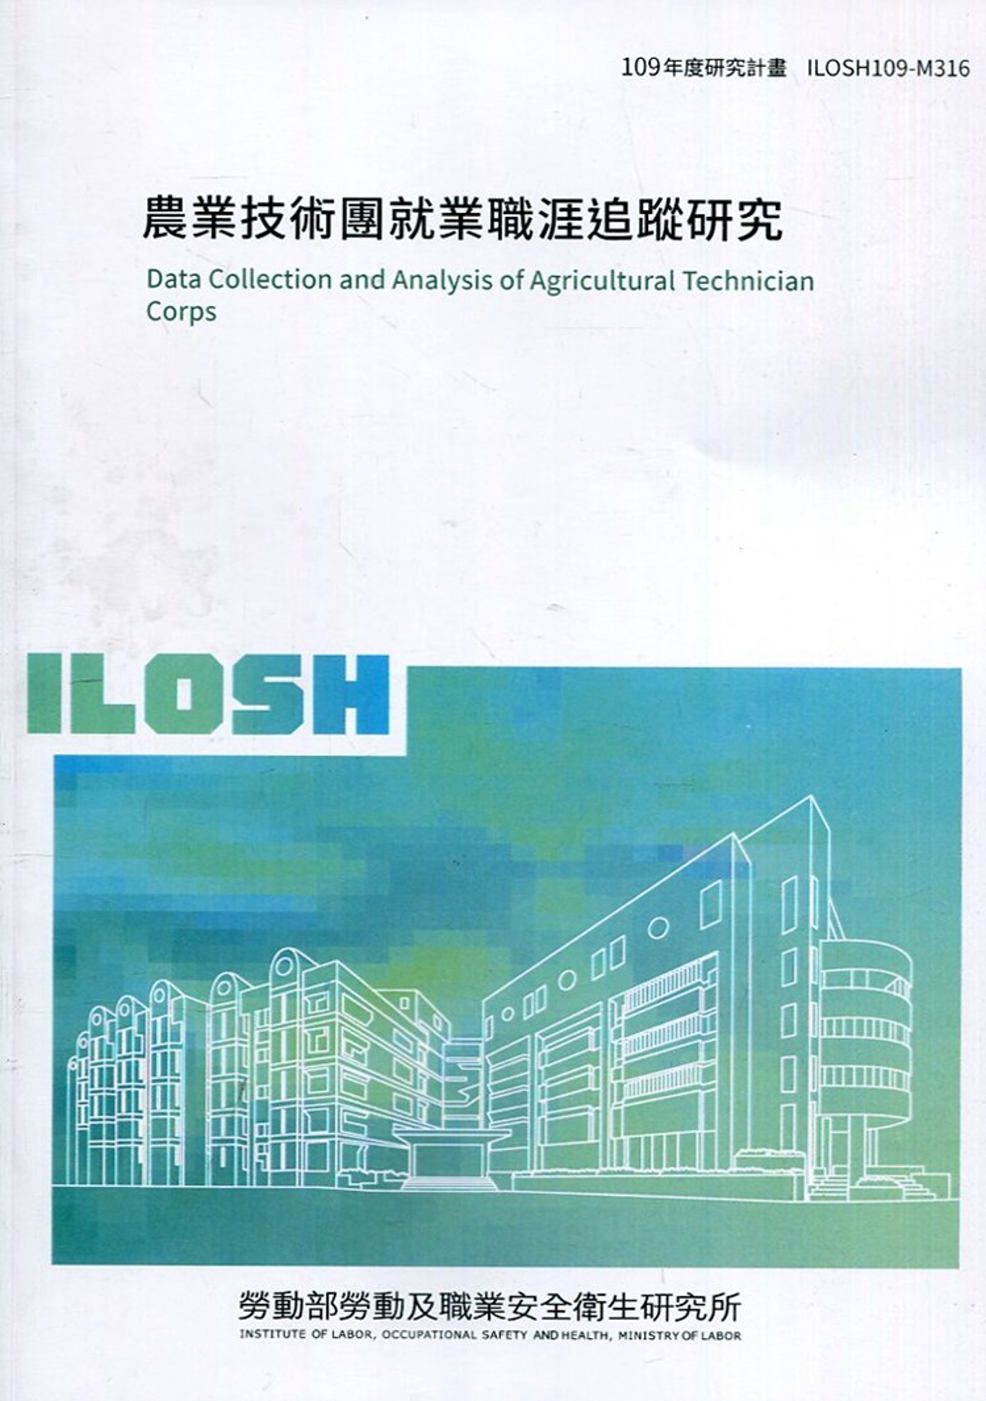 農業技術團就業職涯追蹤研究 ILOSH109-M316